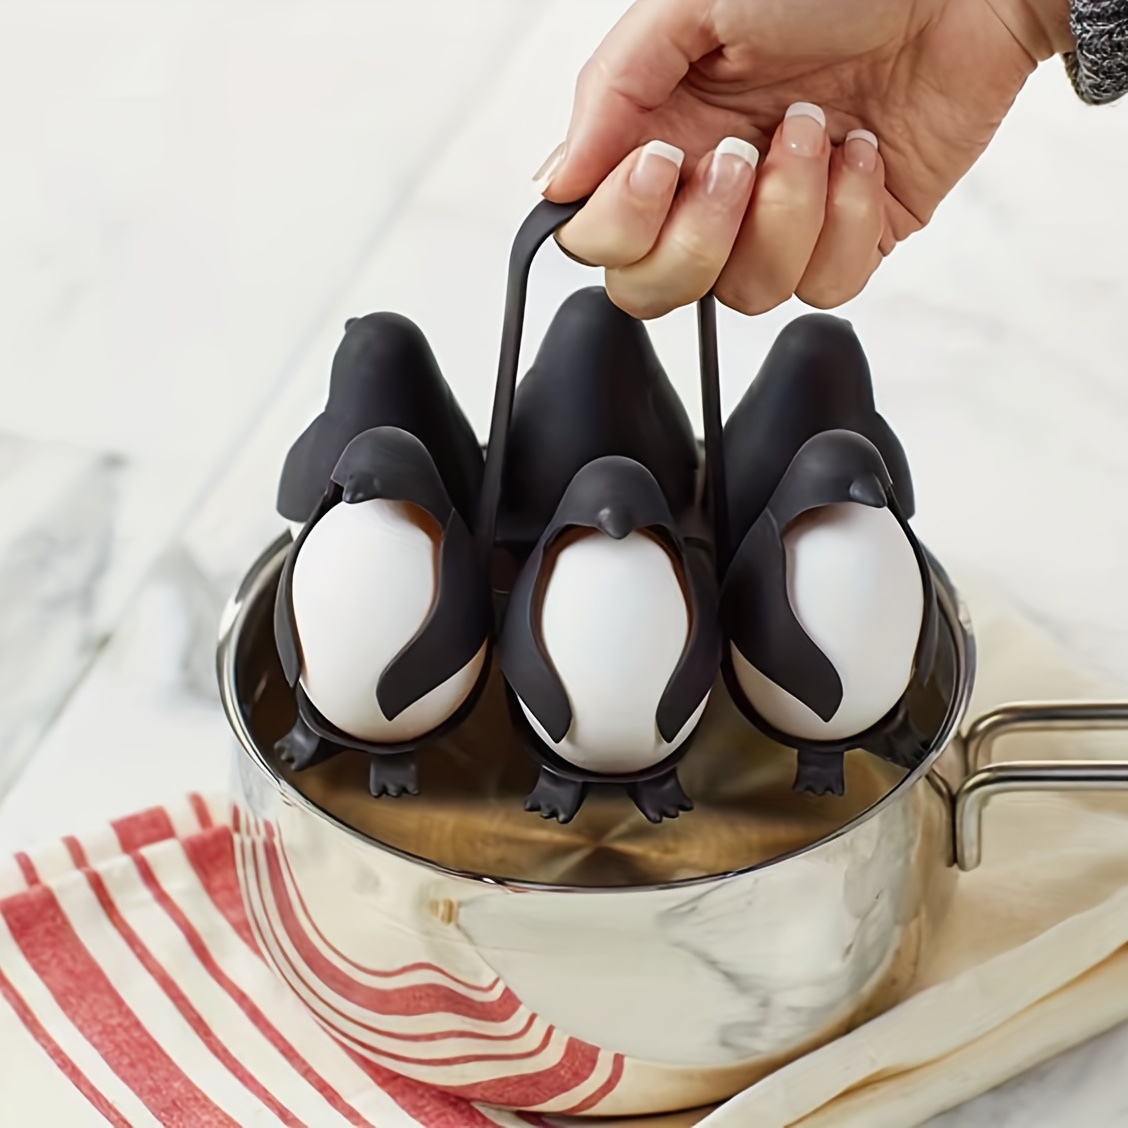 Egguins 3-in-1 Cook, Store And Serve Egg Holder, Penguin-shaped Boiled Egg  Cooker For Making Soft Or Hard Boiled Eggs, Holds 6 Eggs For Easy Cooking A